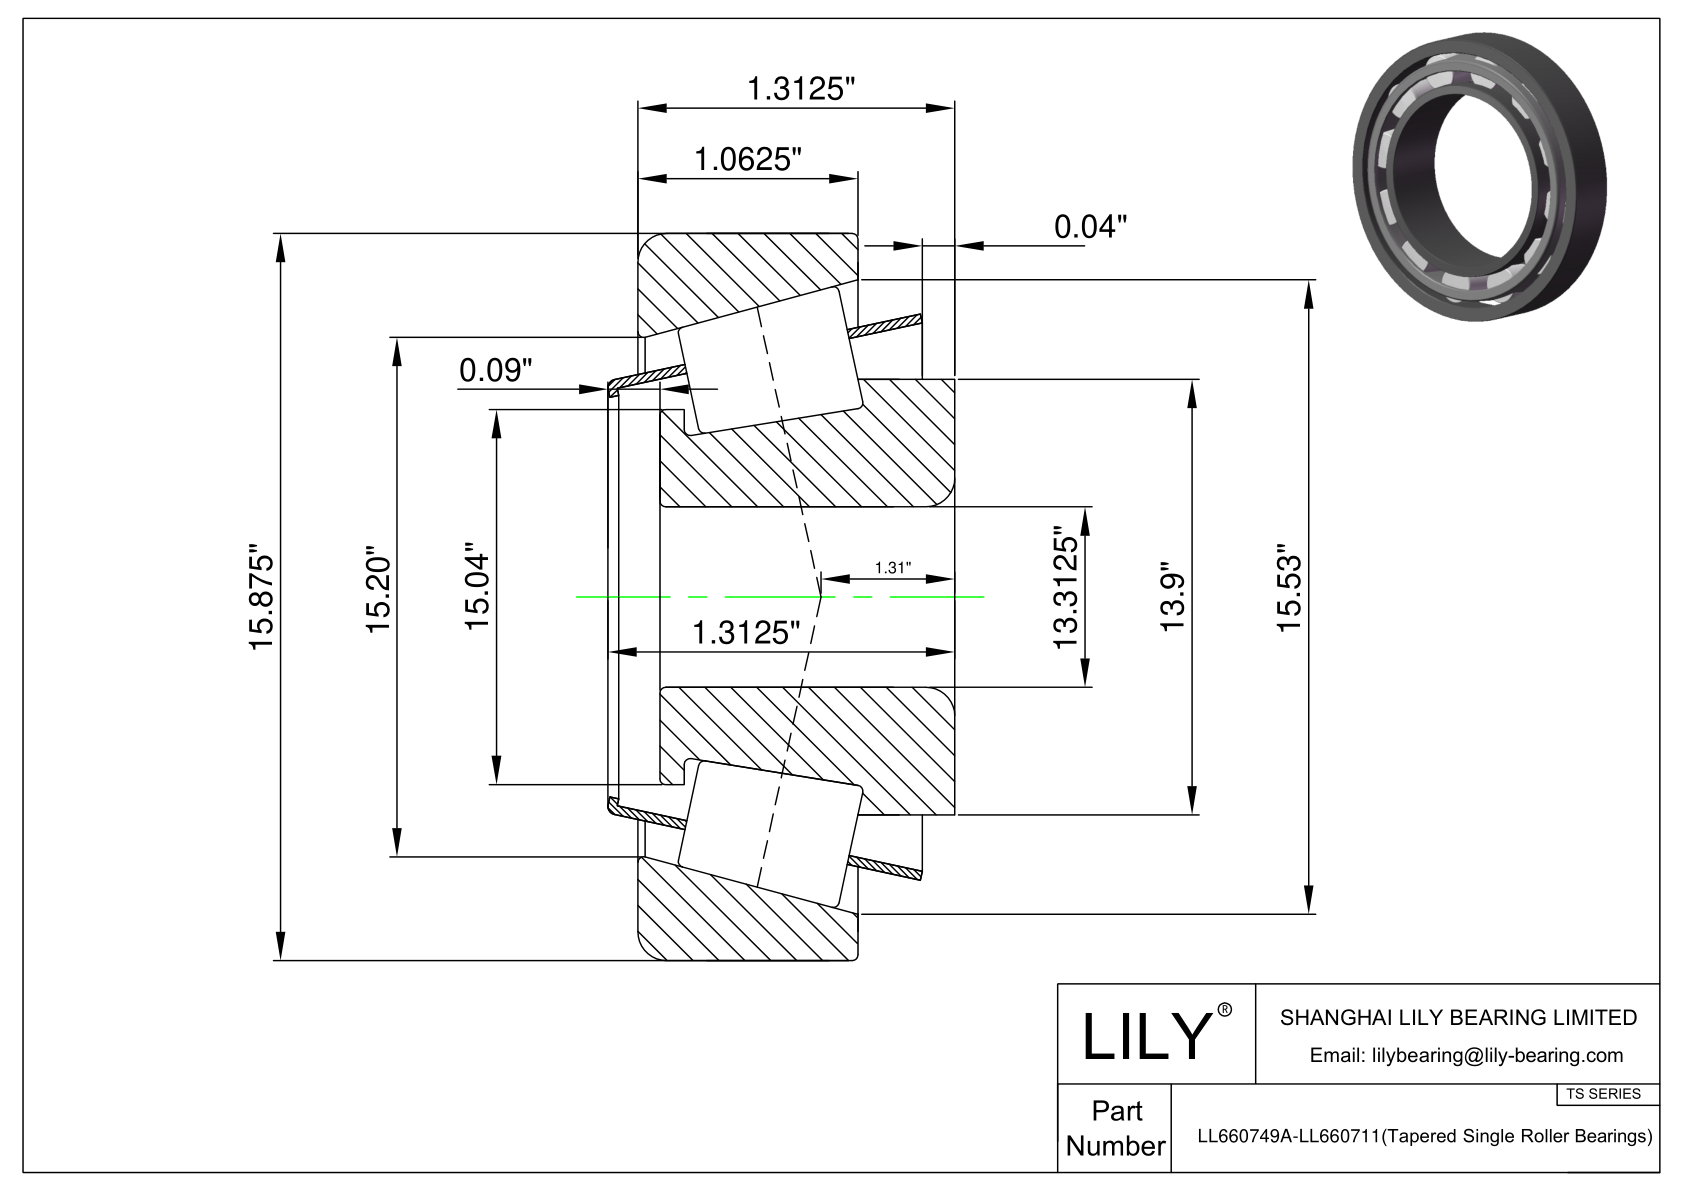 LL660749A-LL660711 TS系列(圆锥单滚子轴承)(英制) CAD图形